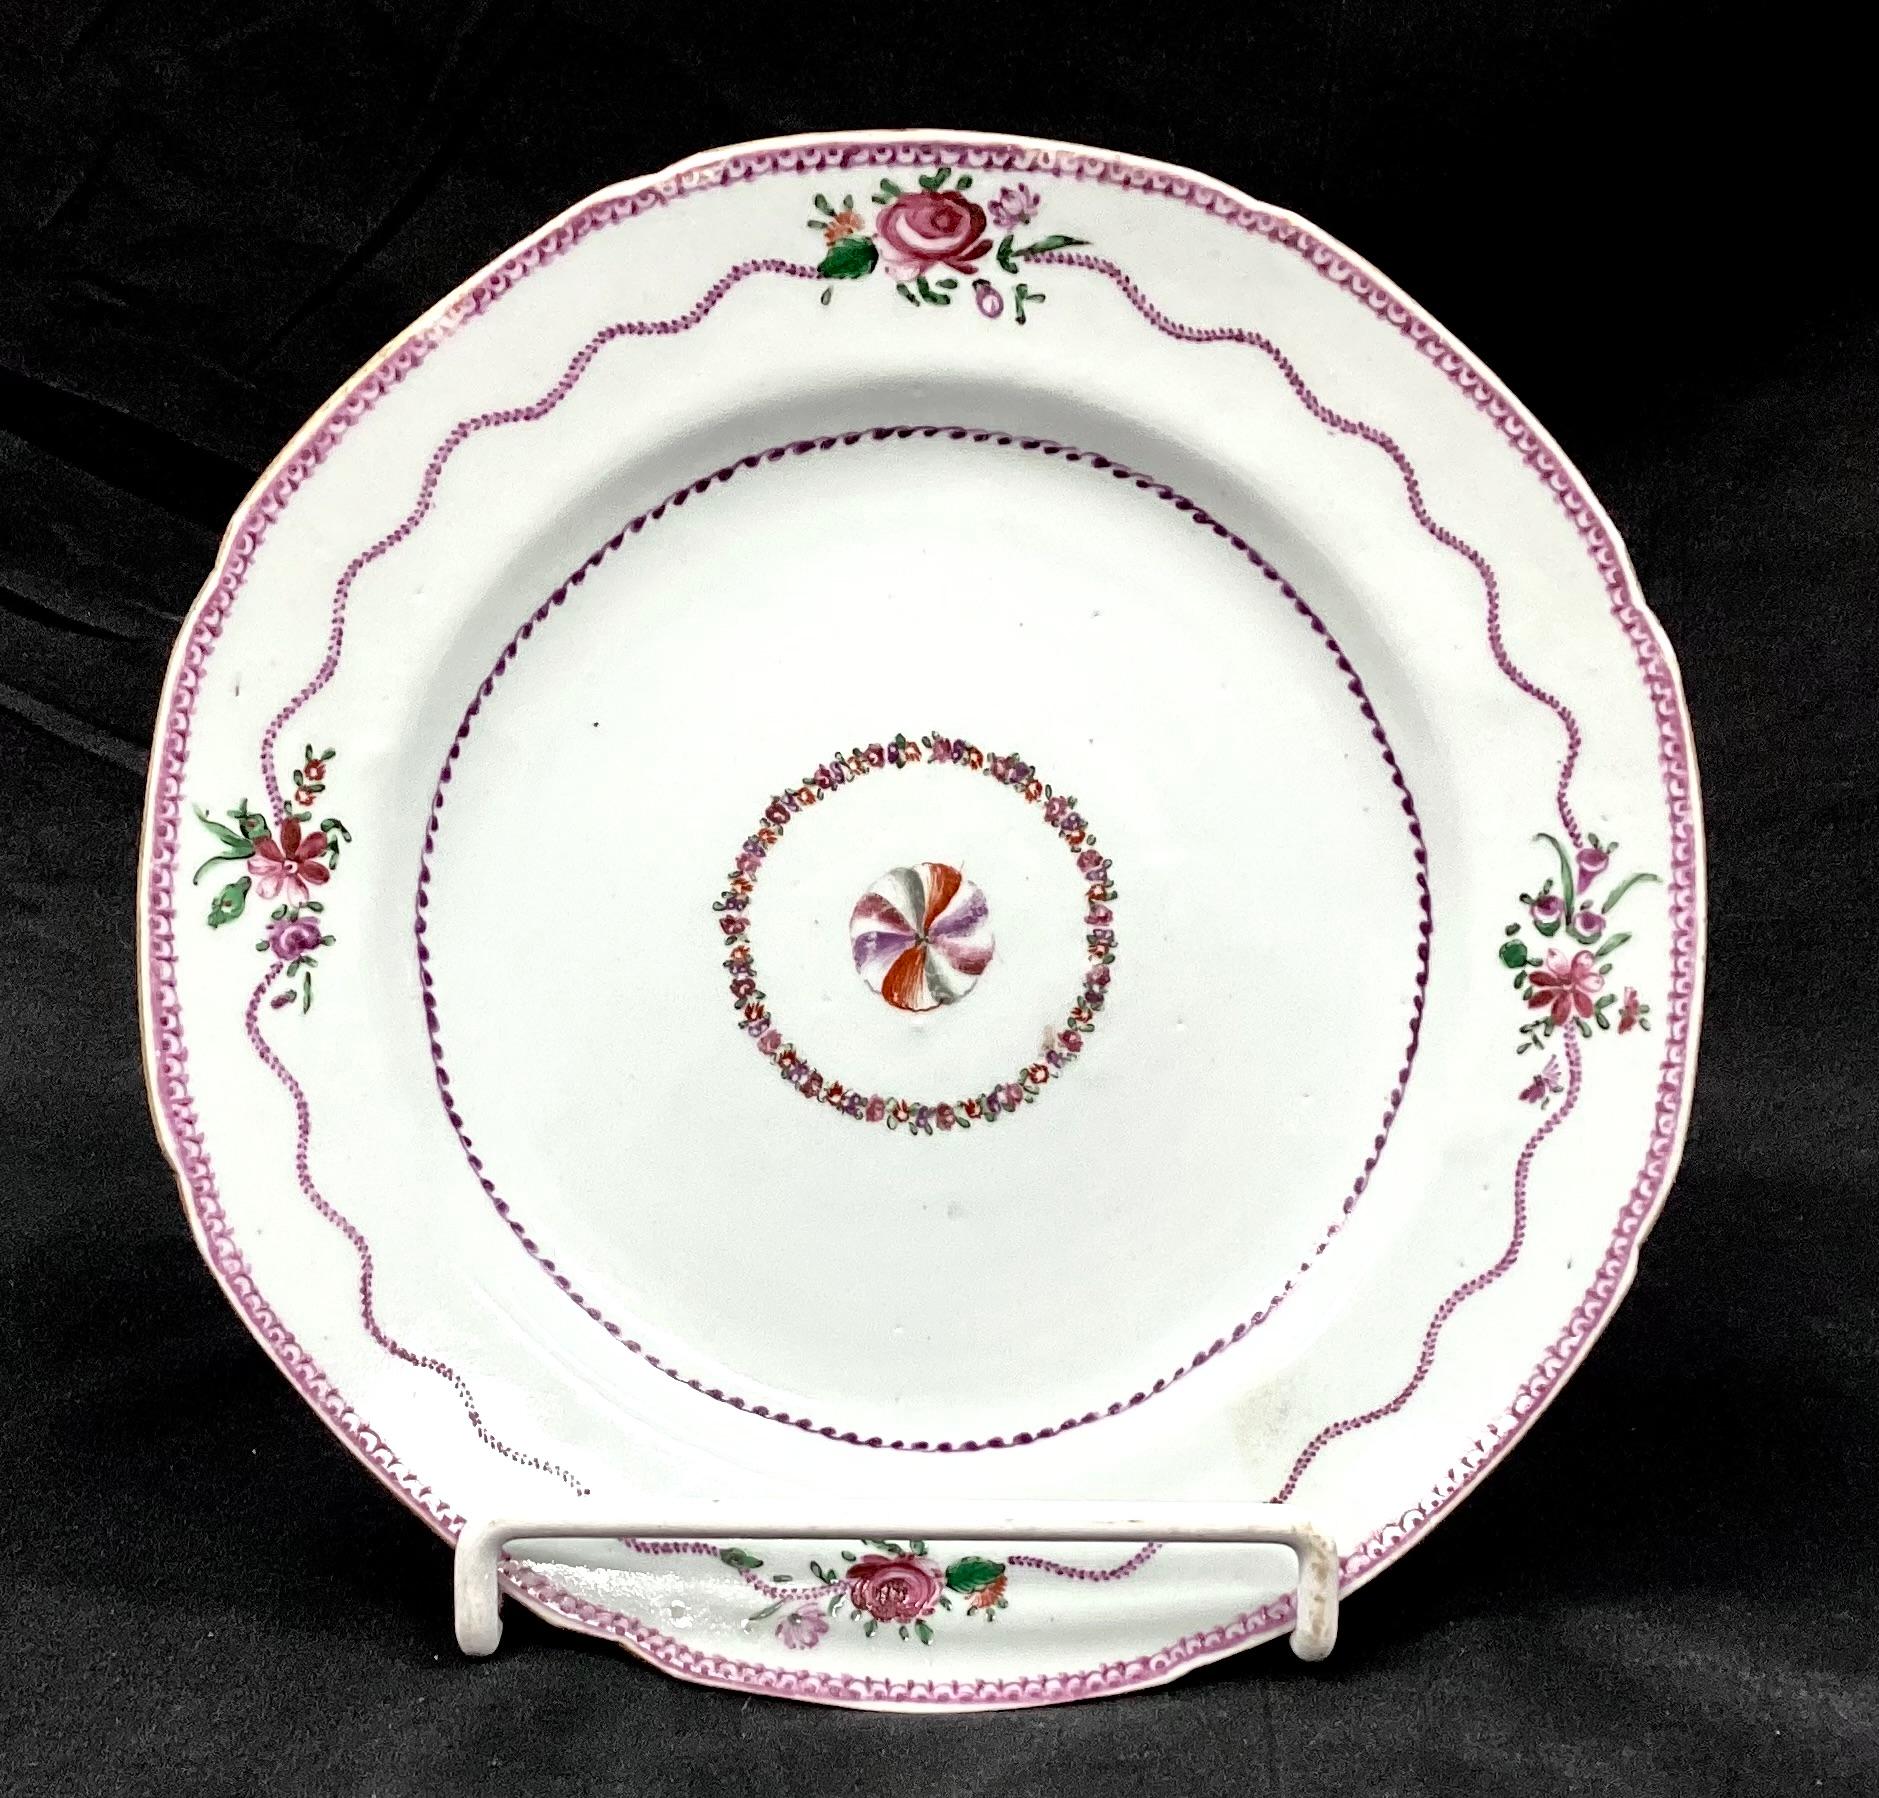 Ensemble de six assiettes en porcelaine d'exportation chinoise du XVIIIe siècle. Les assiettes sont peintes à la main avec des fleurs centrales entourées d'une guirlande. Whiting : couleurs violet, vert et blanc. 